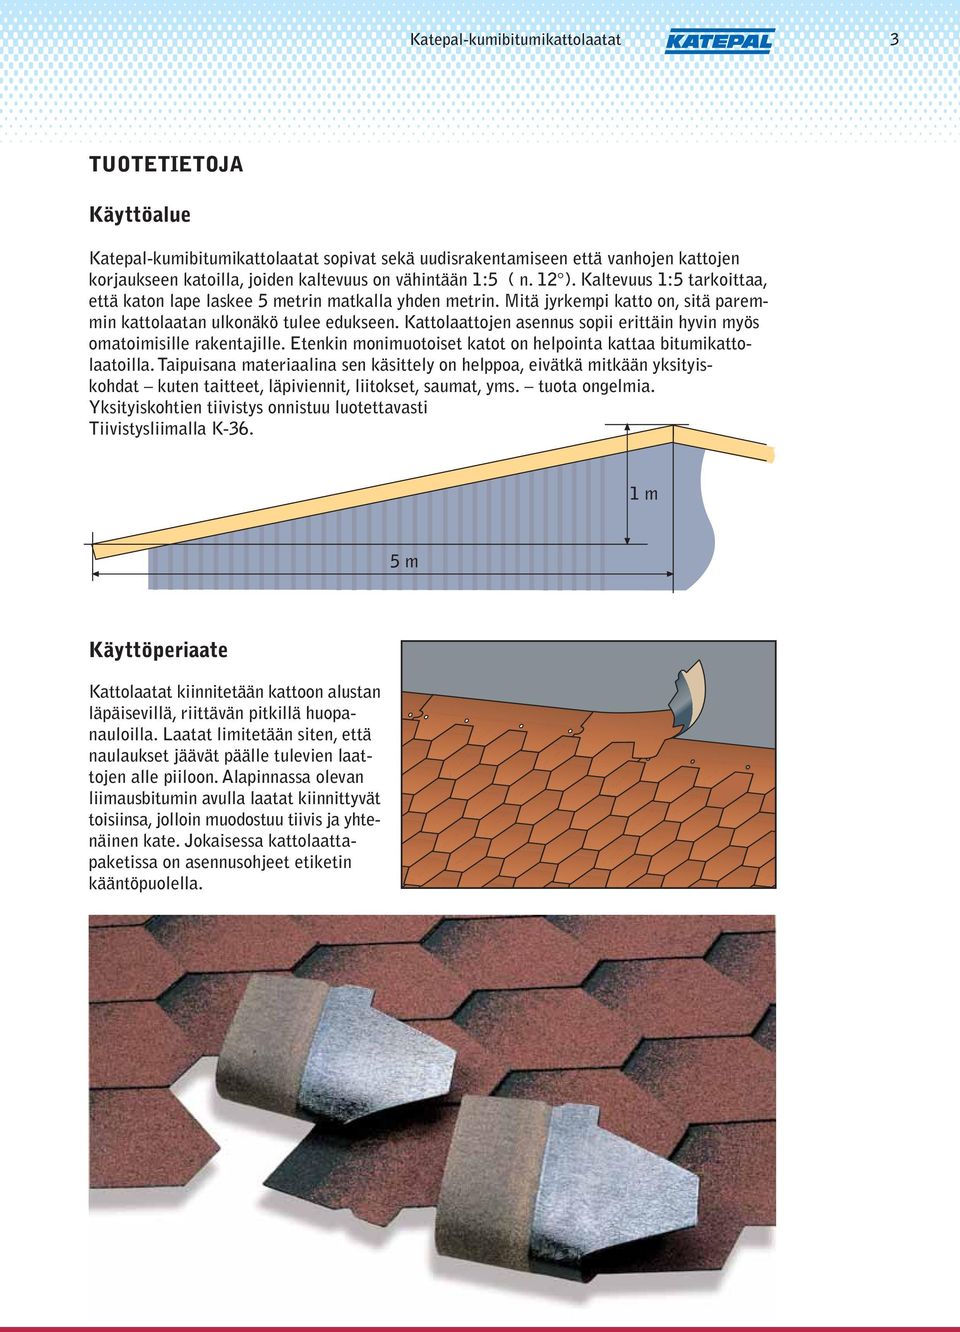 Kattolaattojen asennus sopii erittäin hyvin myös omatoimisille rakentajille. Etenkin monimuotoiset katot on helpointa kattaa bitumikattolaatoilla.